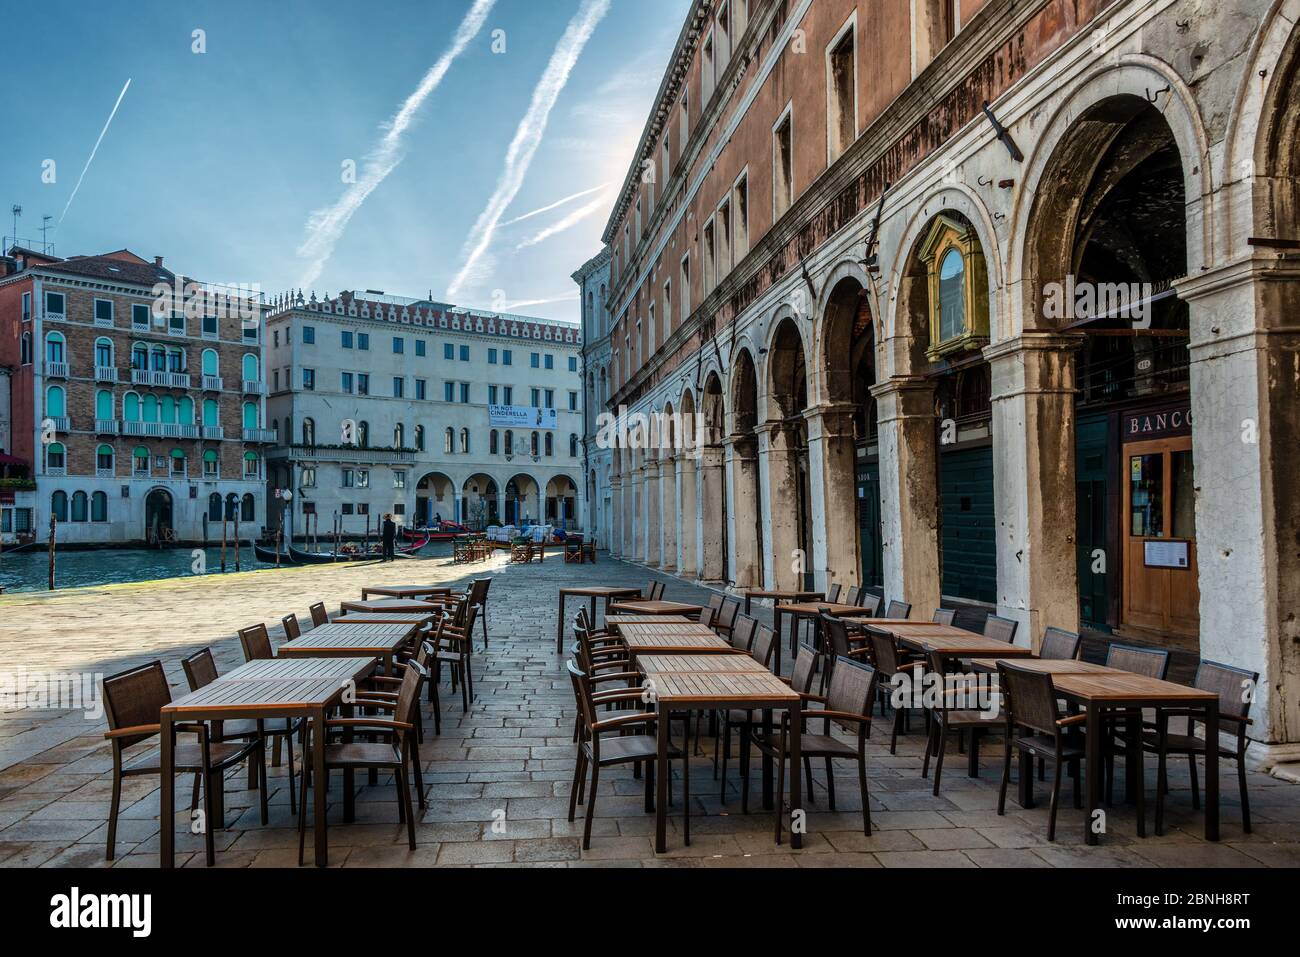 Venedig an einem kalten Wintertag im Dezember abseits der Touristenpfade, versteckte Ecken - versteckte Schönheit Stockfoto